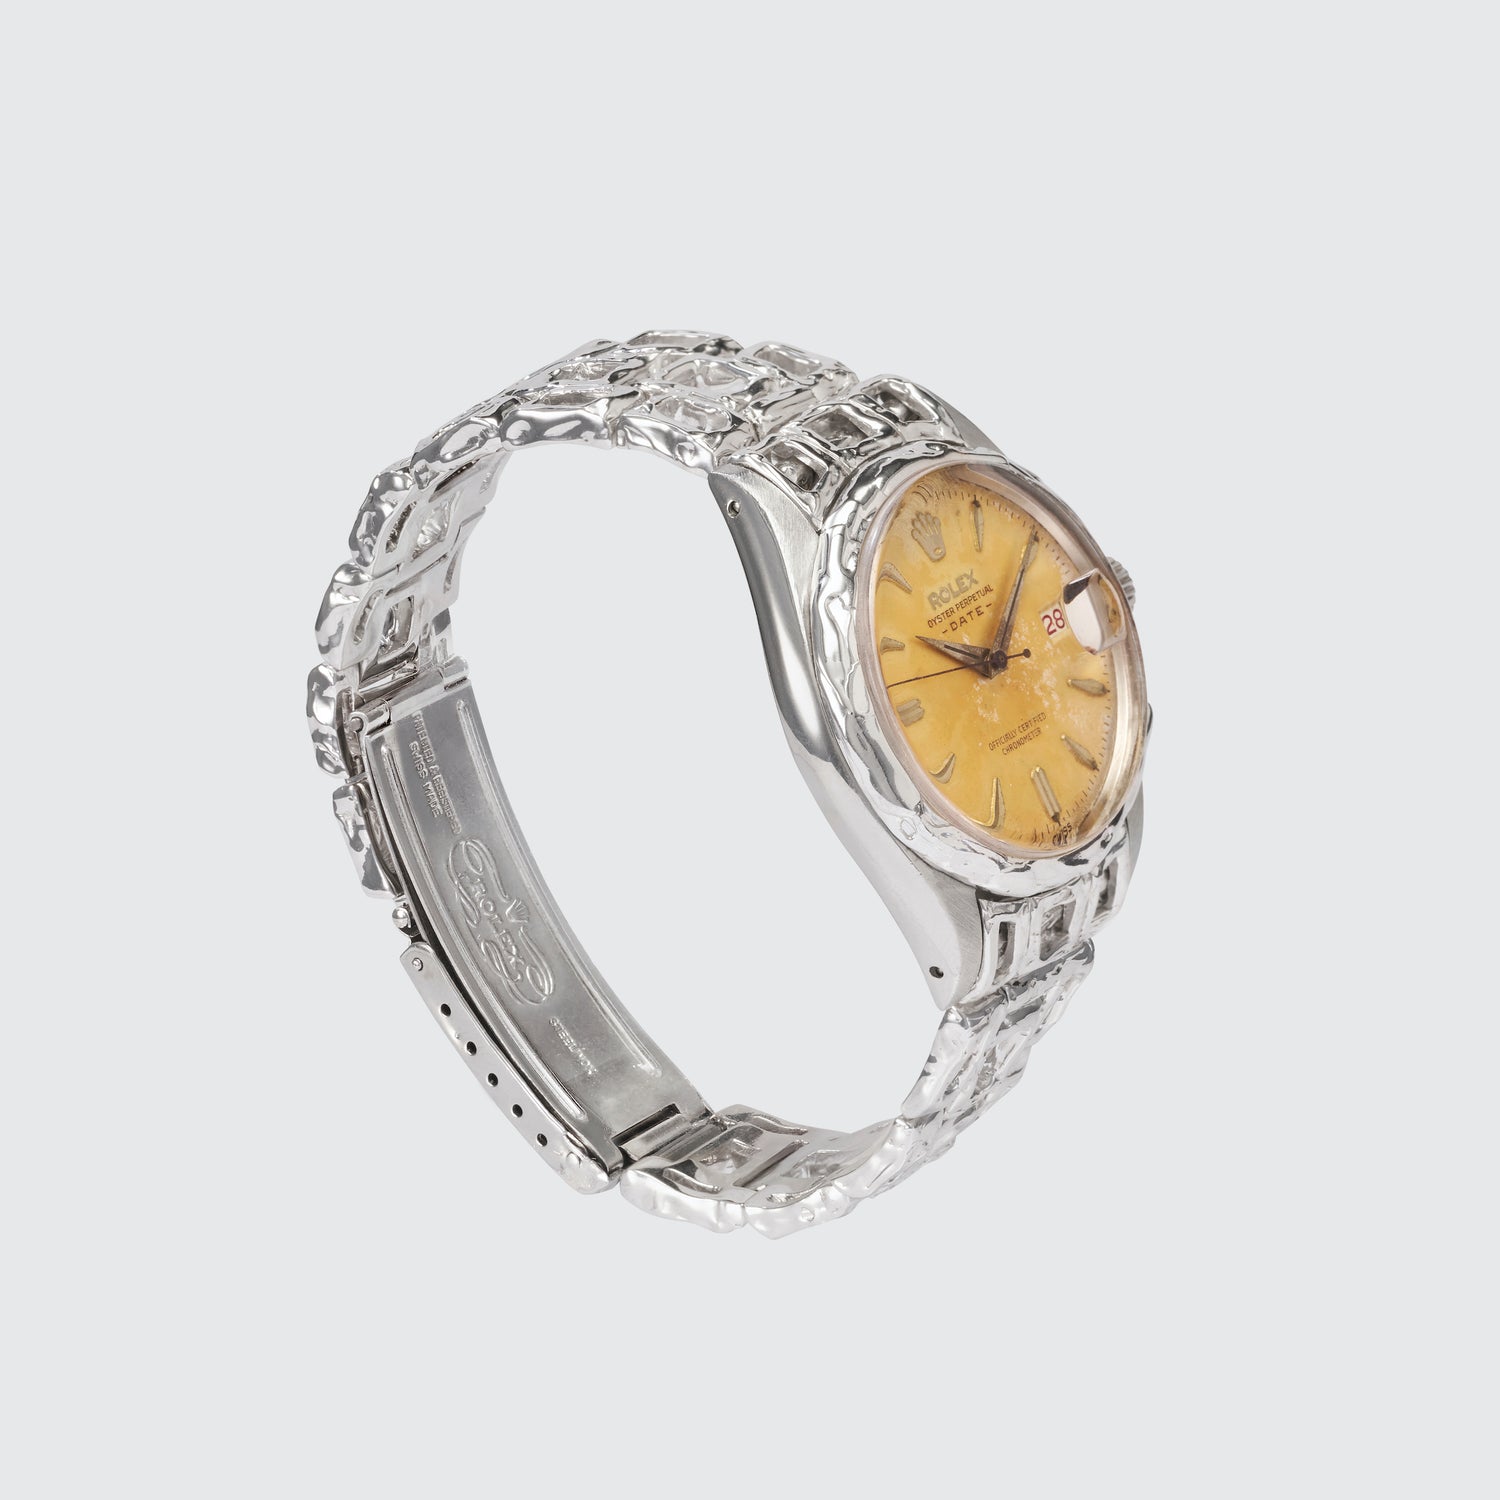 Customised Vintage Rolex Oysterdate Perpetual Watch